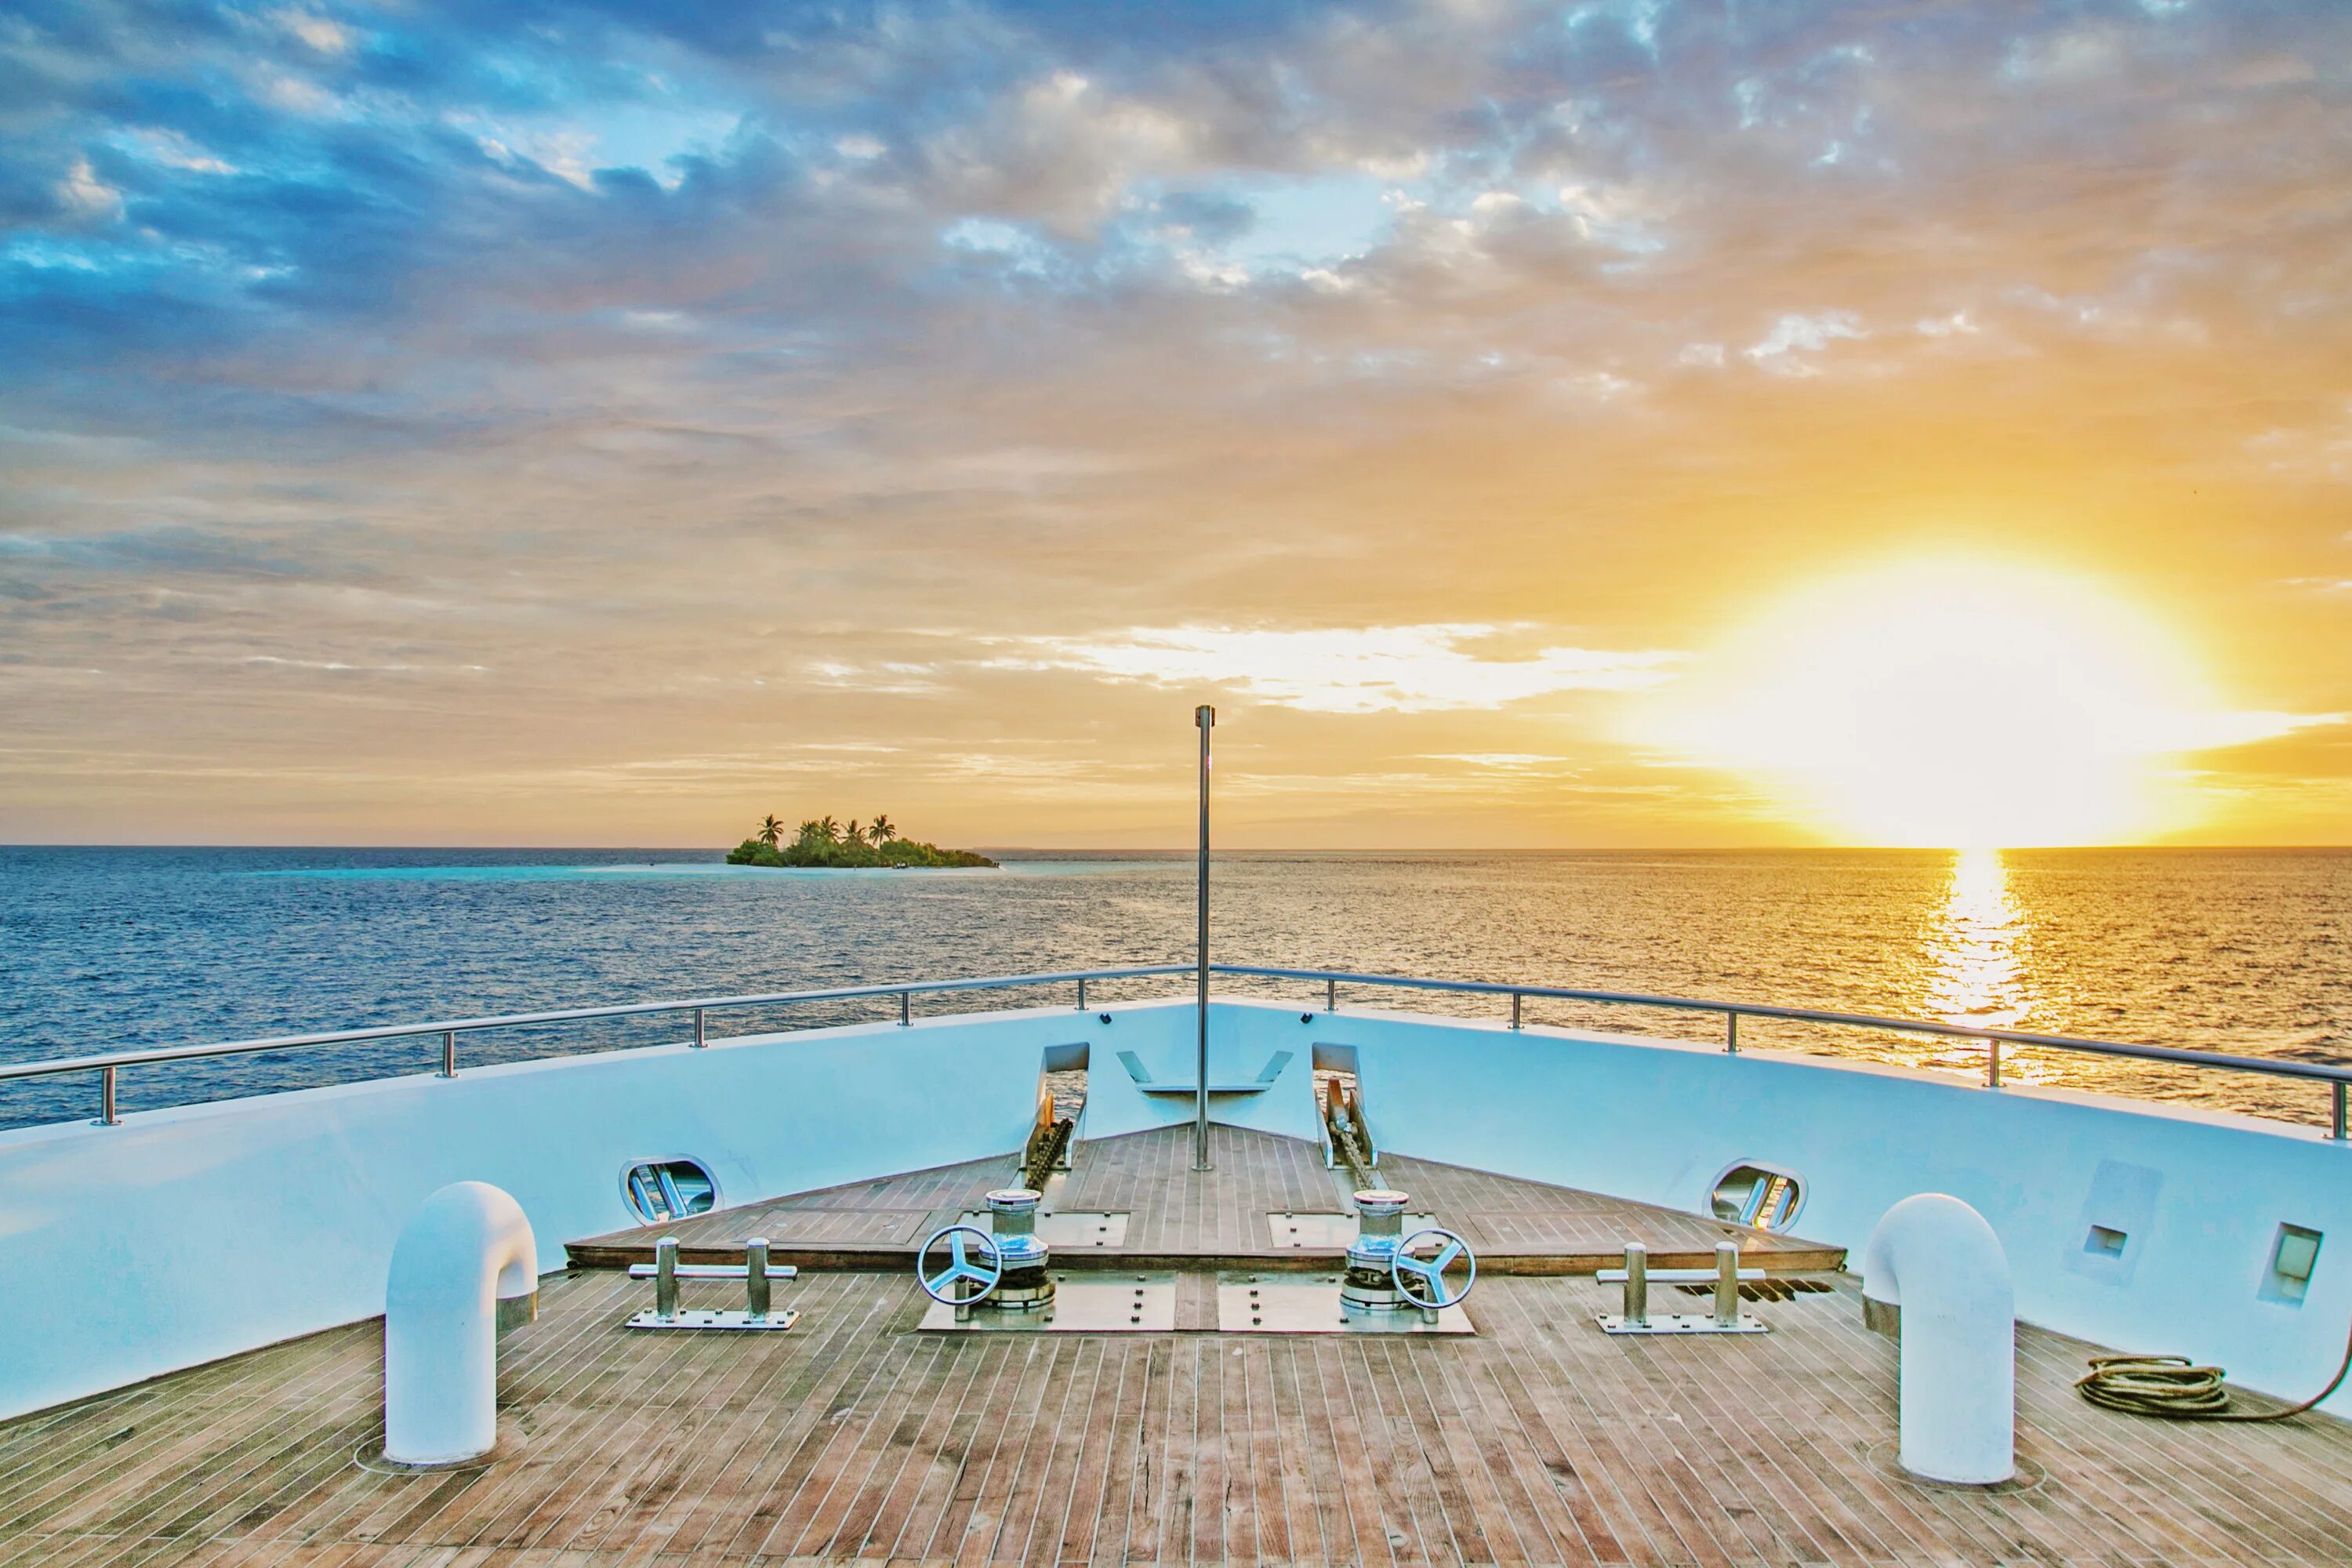 Scuba Spa яхта. Плавучий отель Мальдивы. Круиз на яхте Мальдивы. Мальдивы Scuba Spa яхта. Perfect island